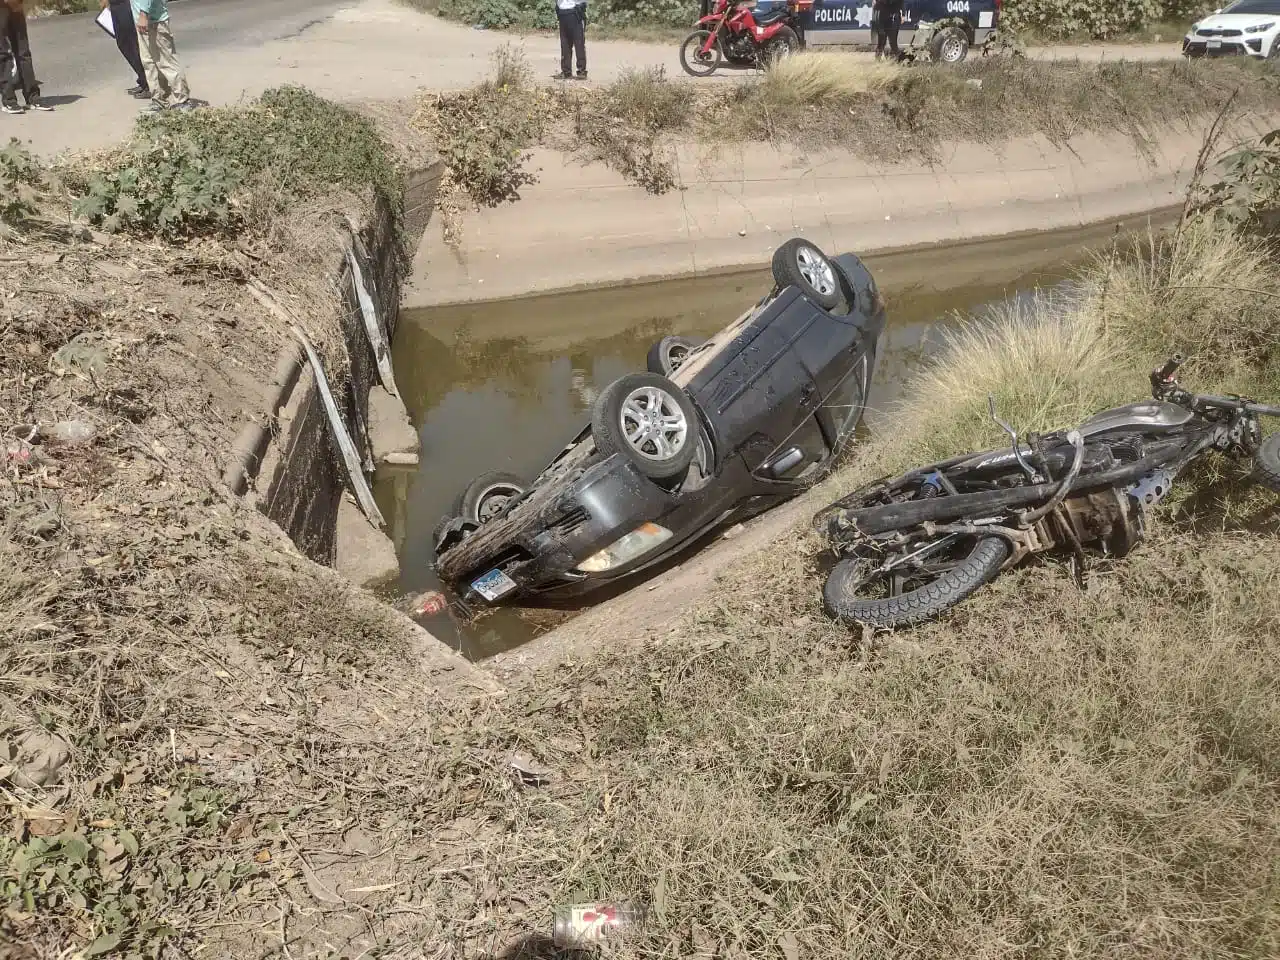 Motocicleta y automovil involucrados en accidente Costa Rica, Culiacán